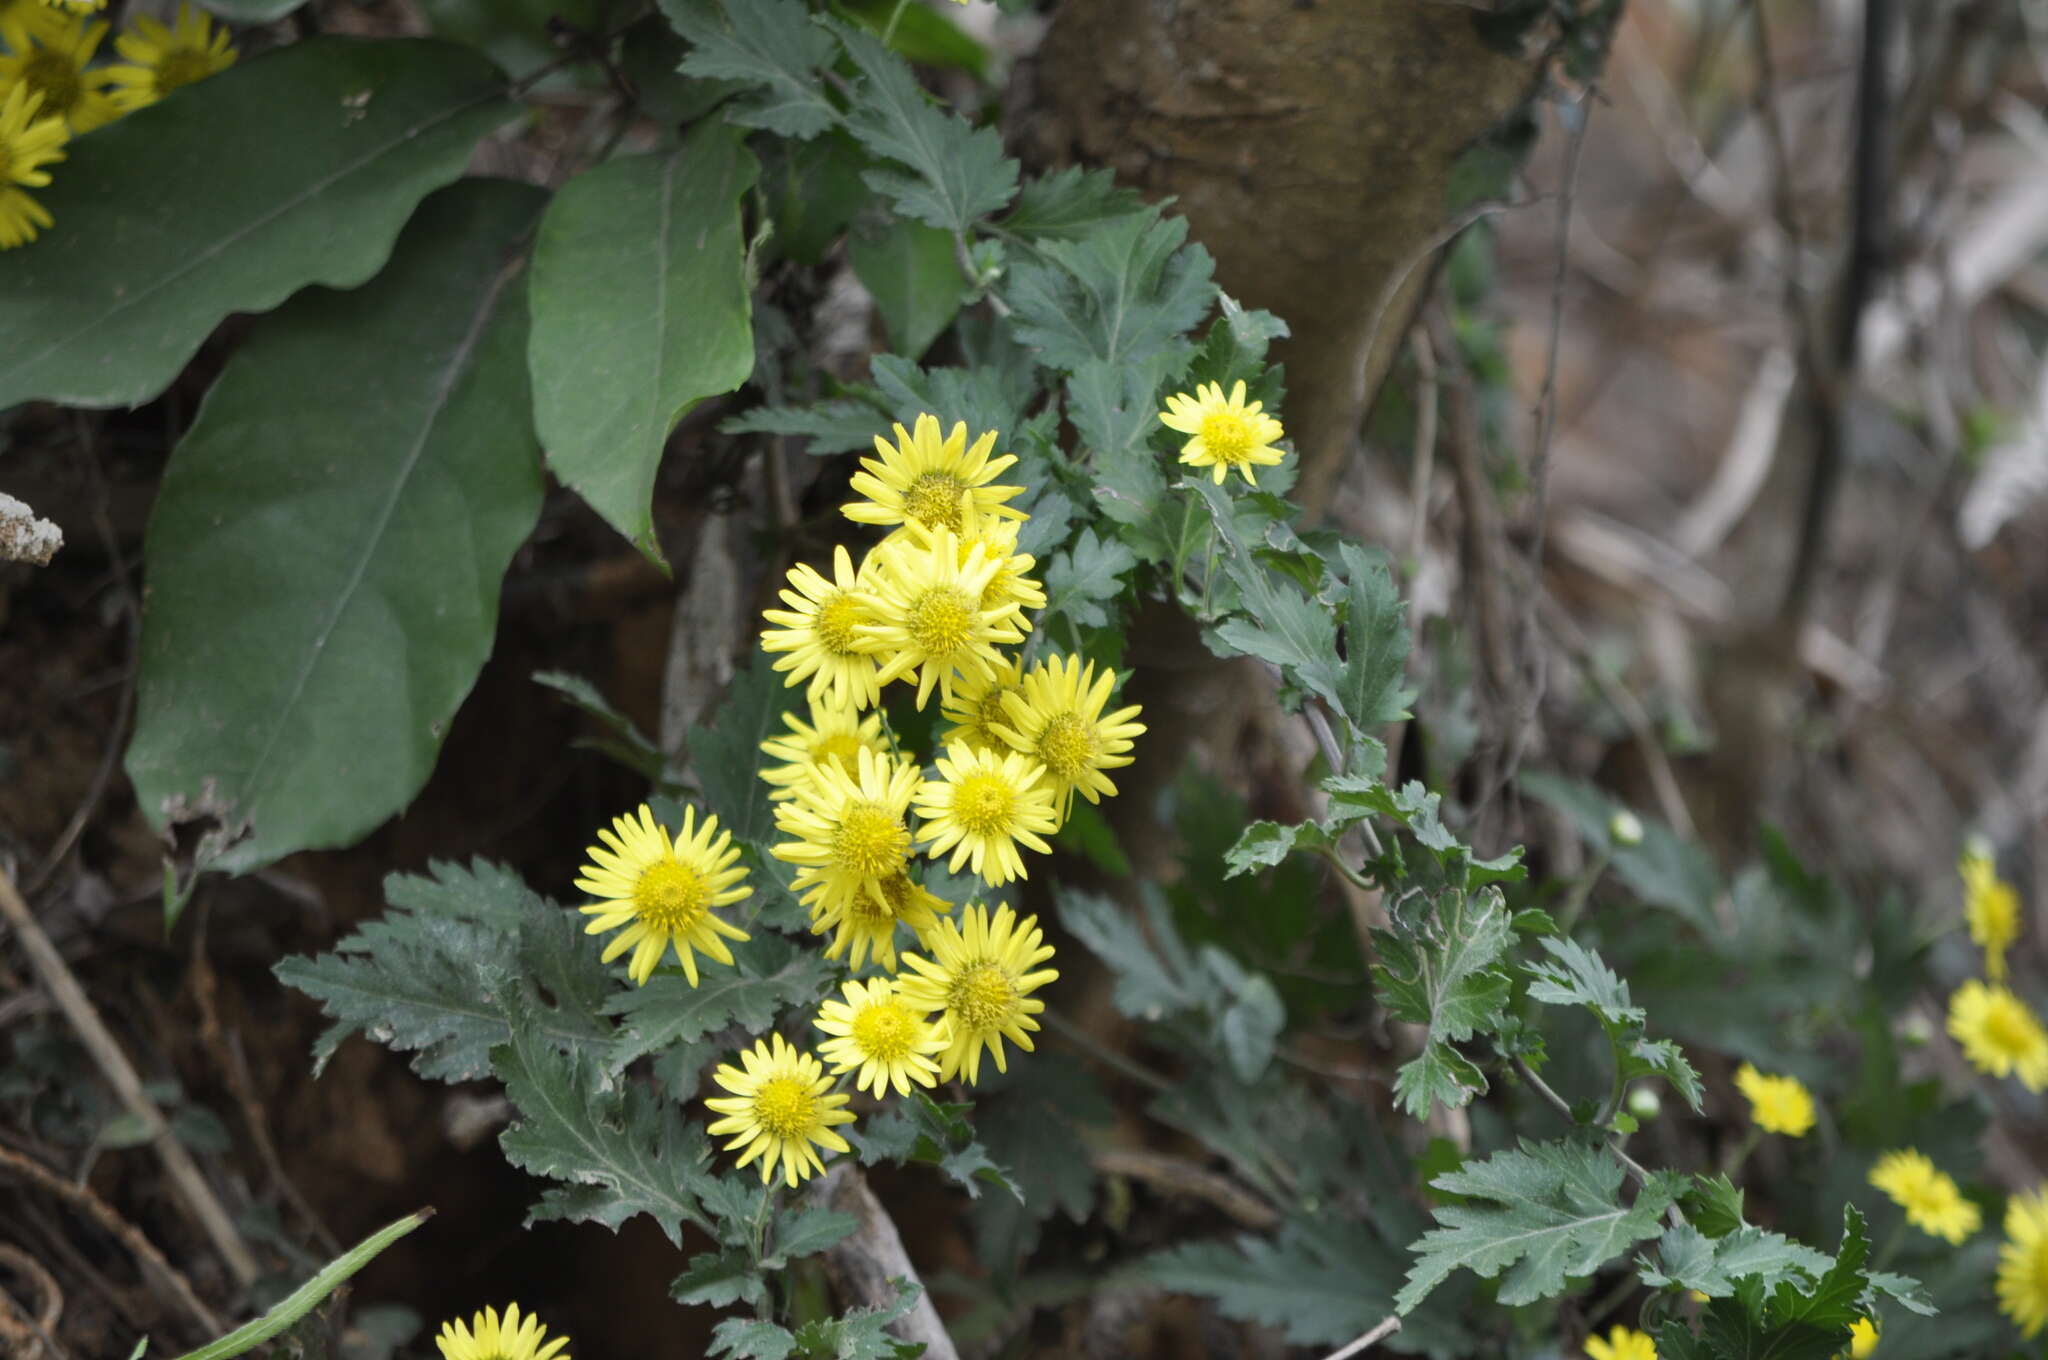 Image of Indian Chrysanthemum